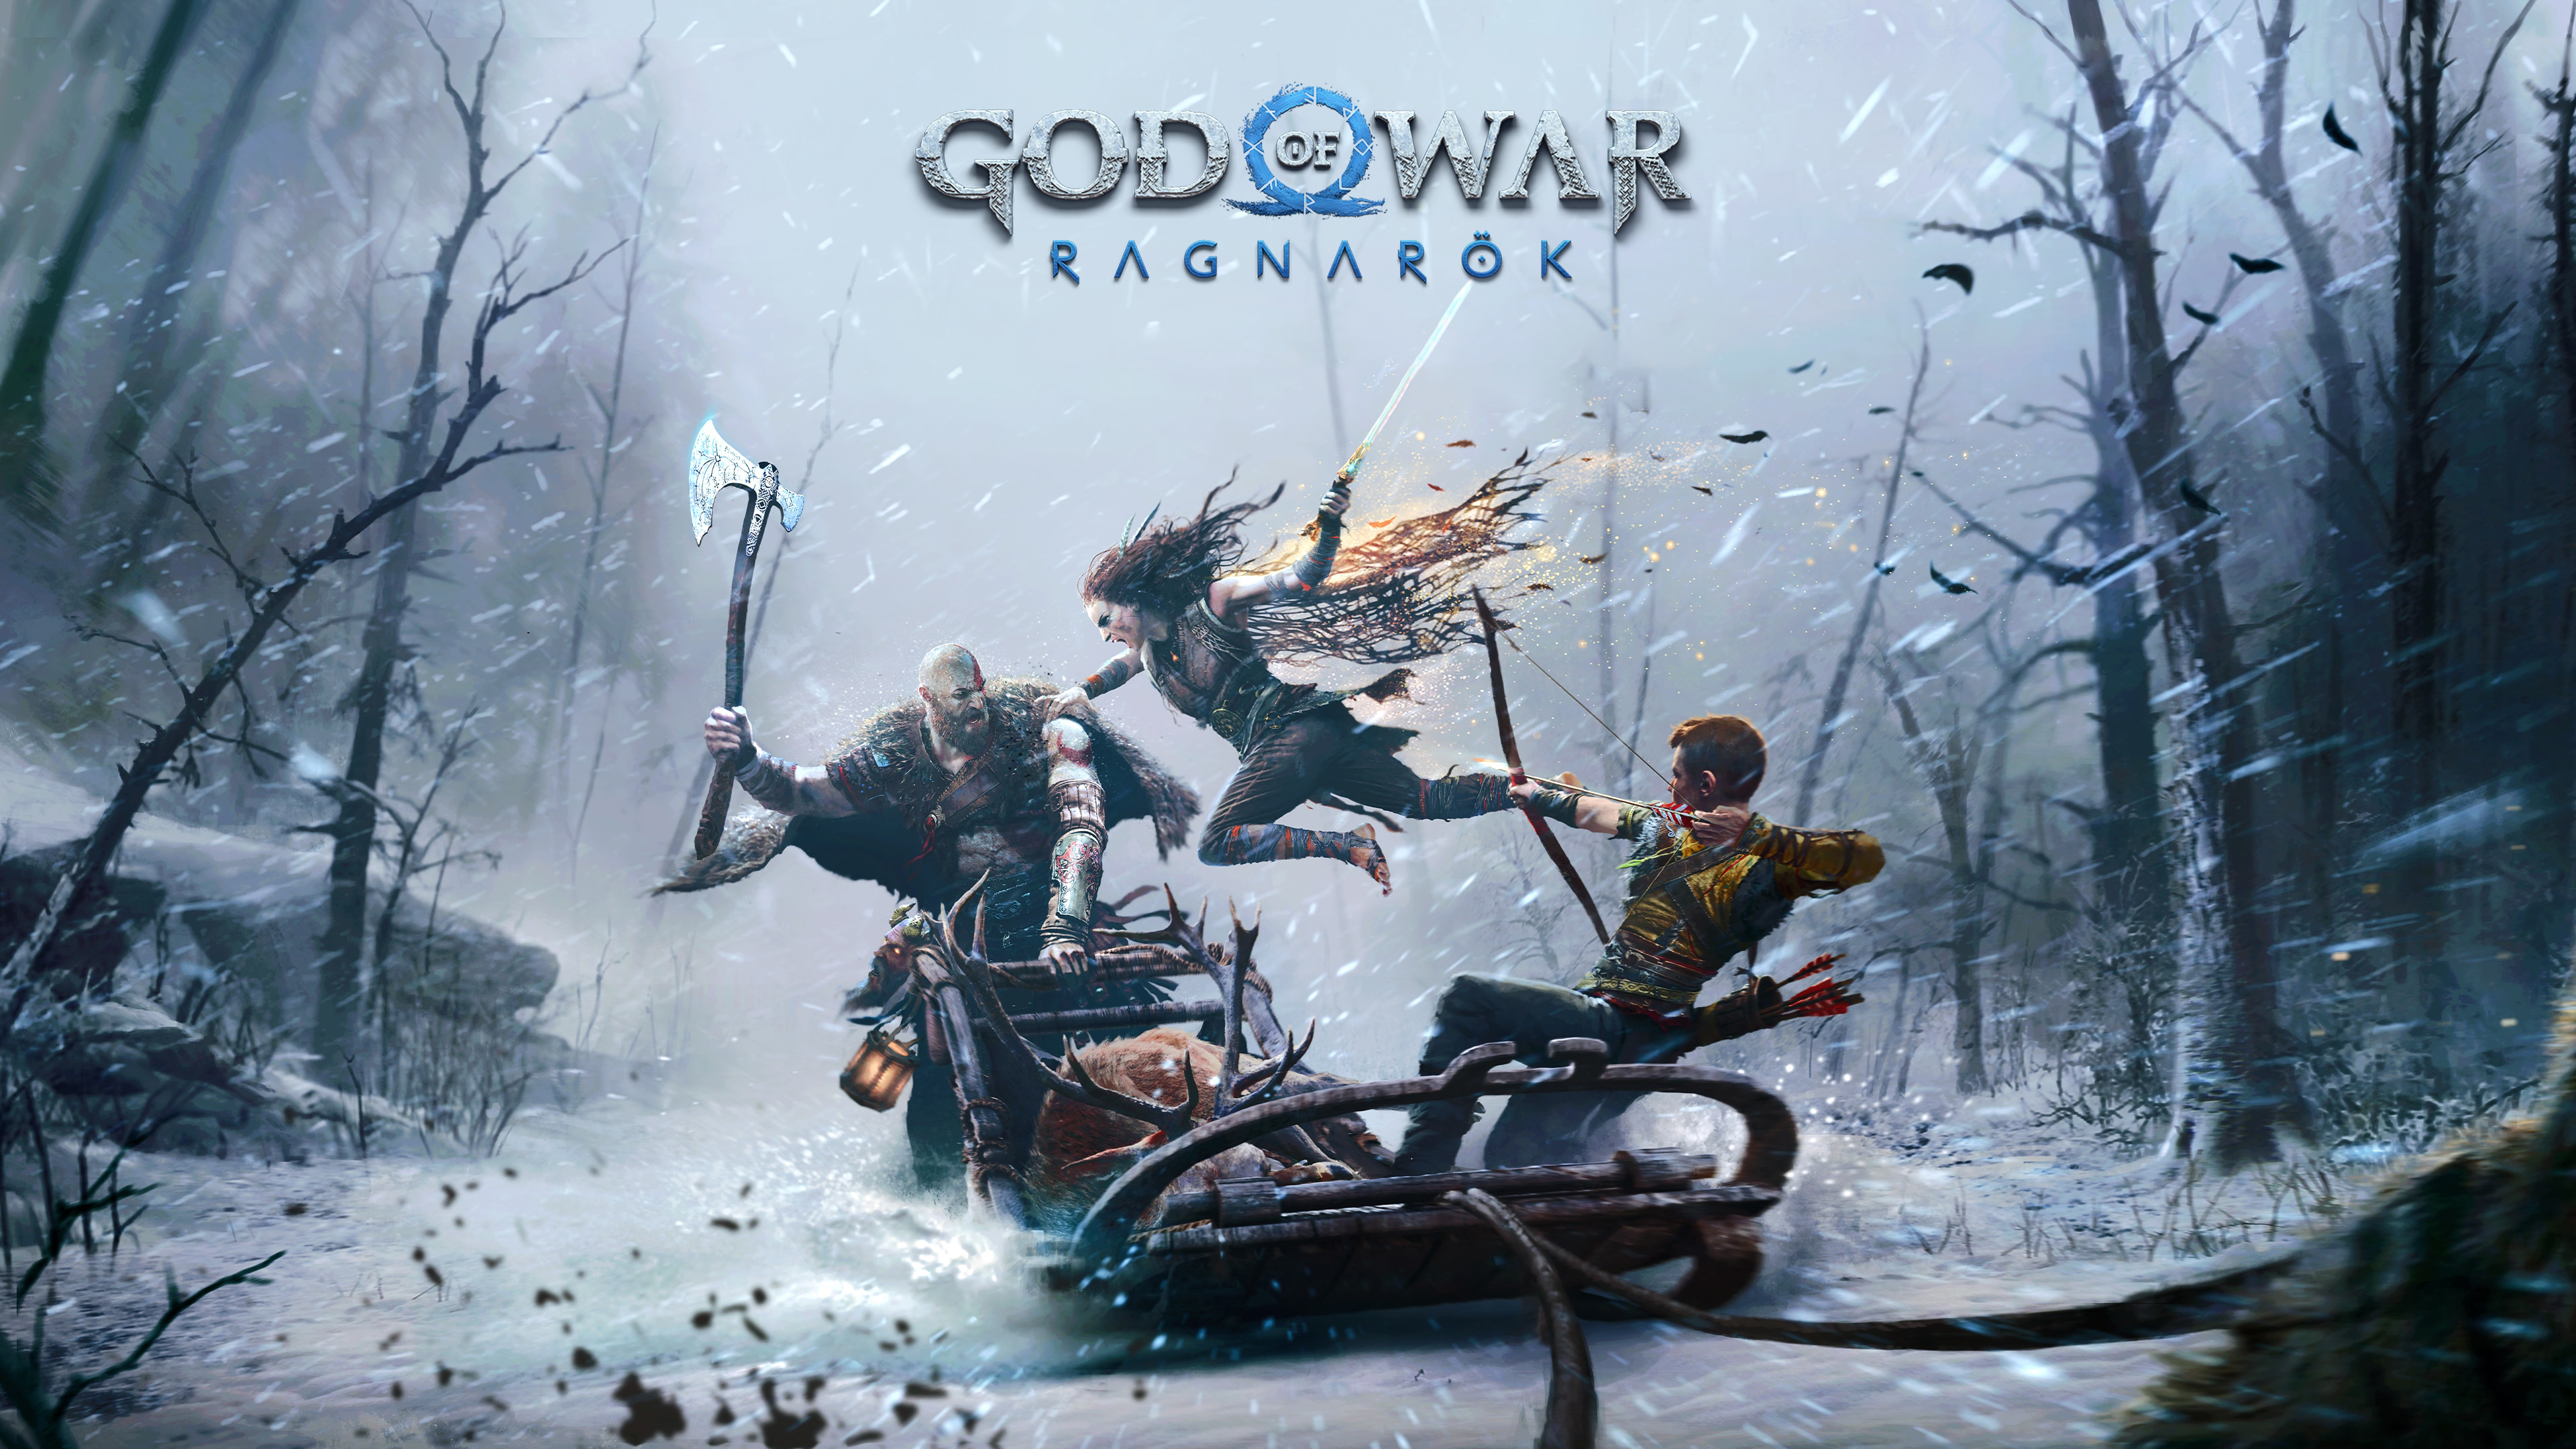 160 God of War Ragnarök HD Wallpapers and Backgrounds